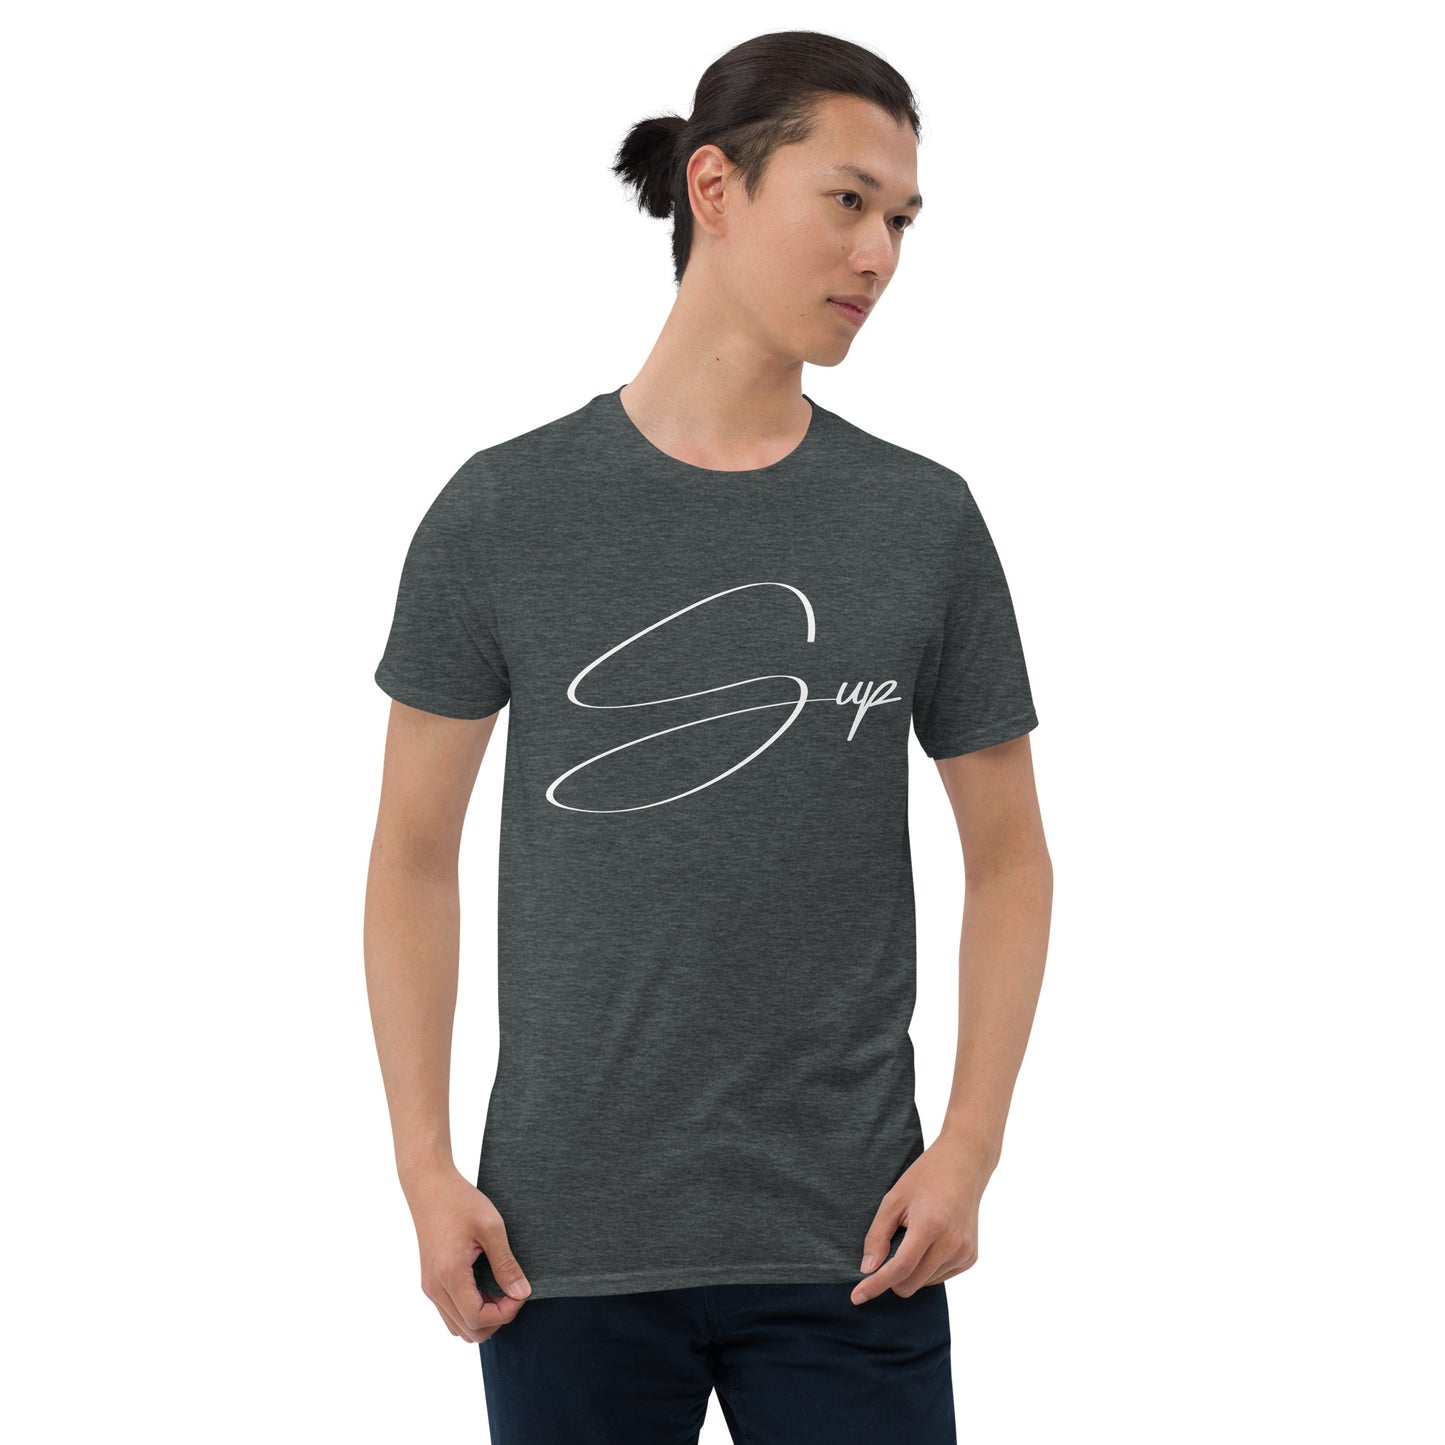 Short-Sleeve Unisex "Sup" T-Shirt